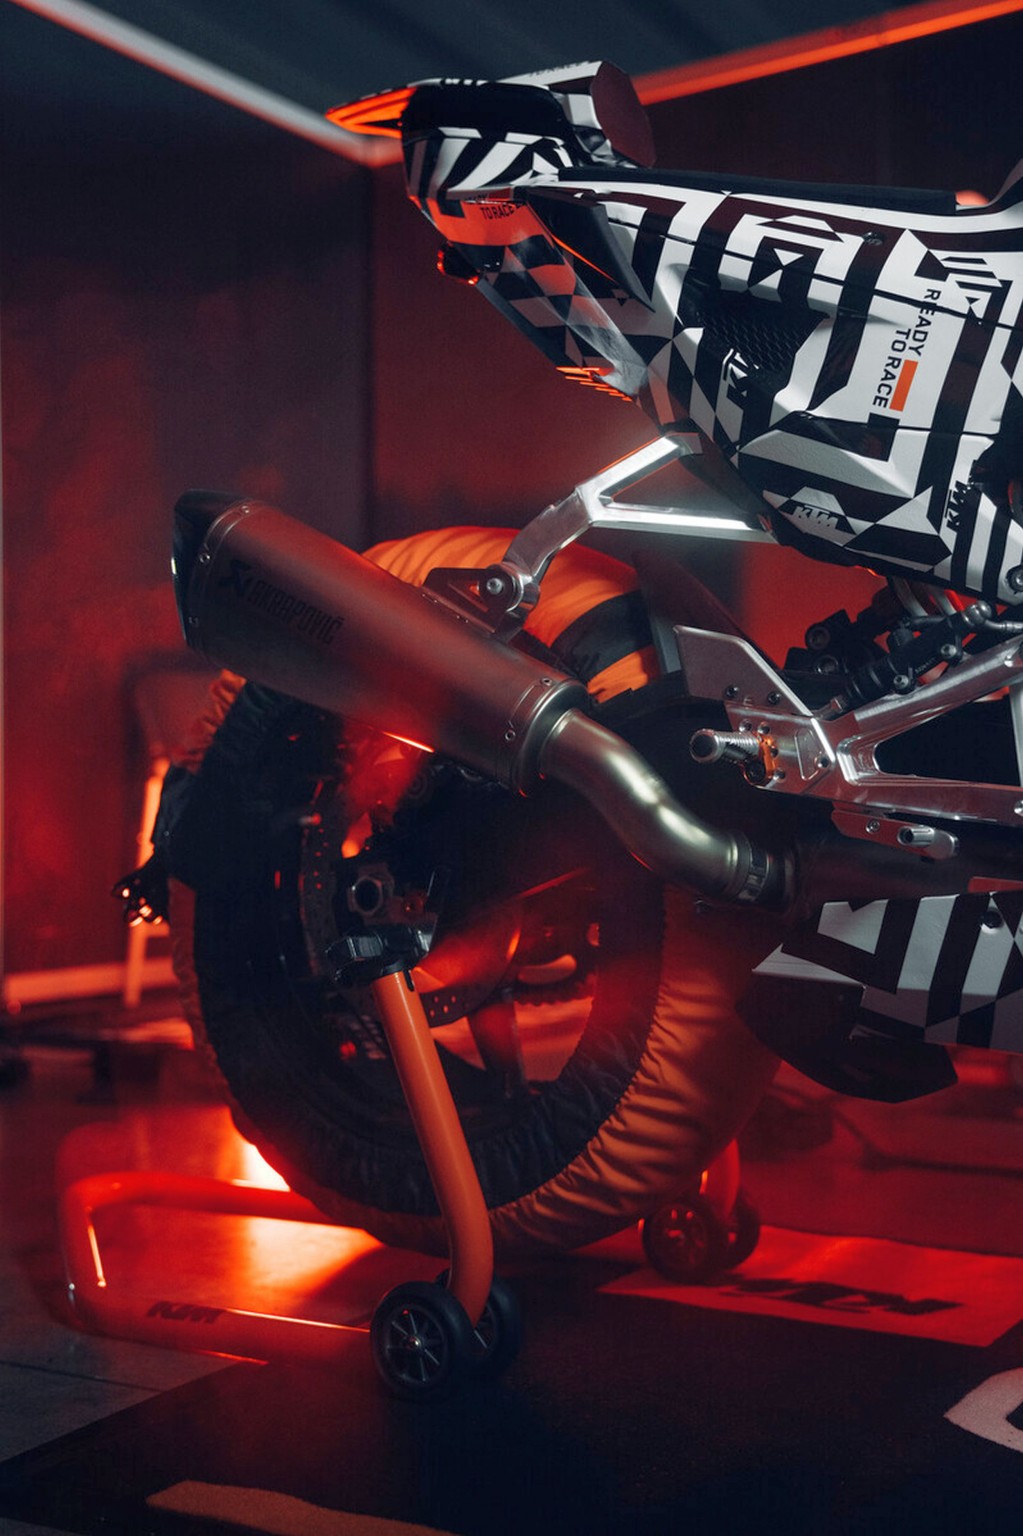 KTM 990 RC R - végre egy telivér sportmotor az országútra! - Kép 42